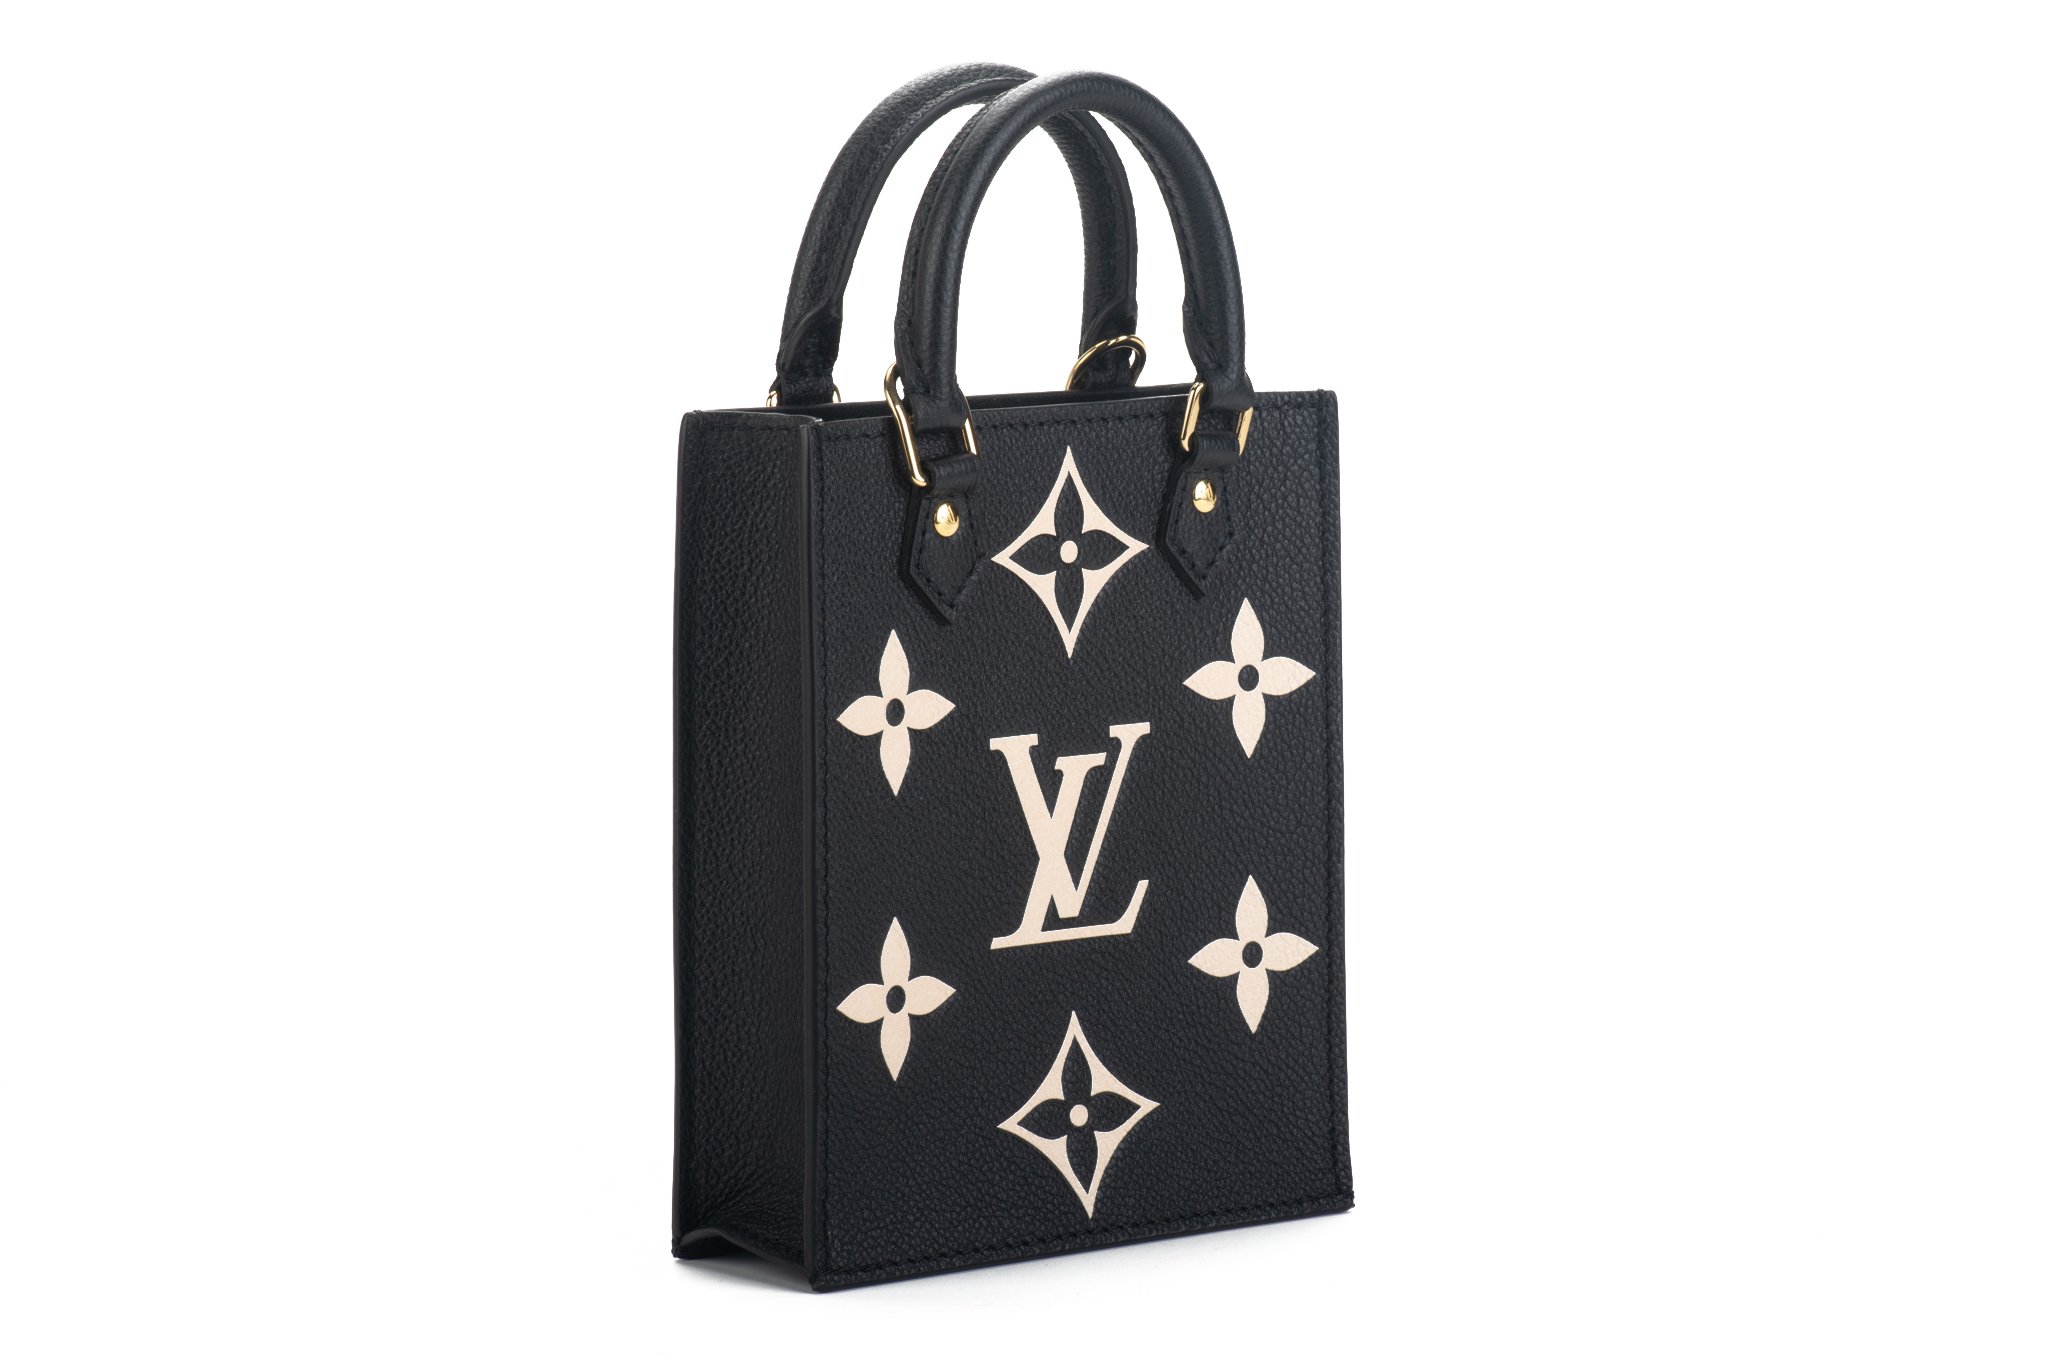 Louis Vuitton Sac Plat BB – One Designers Boutique